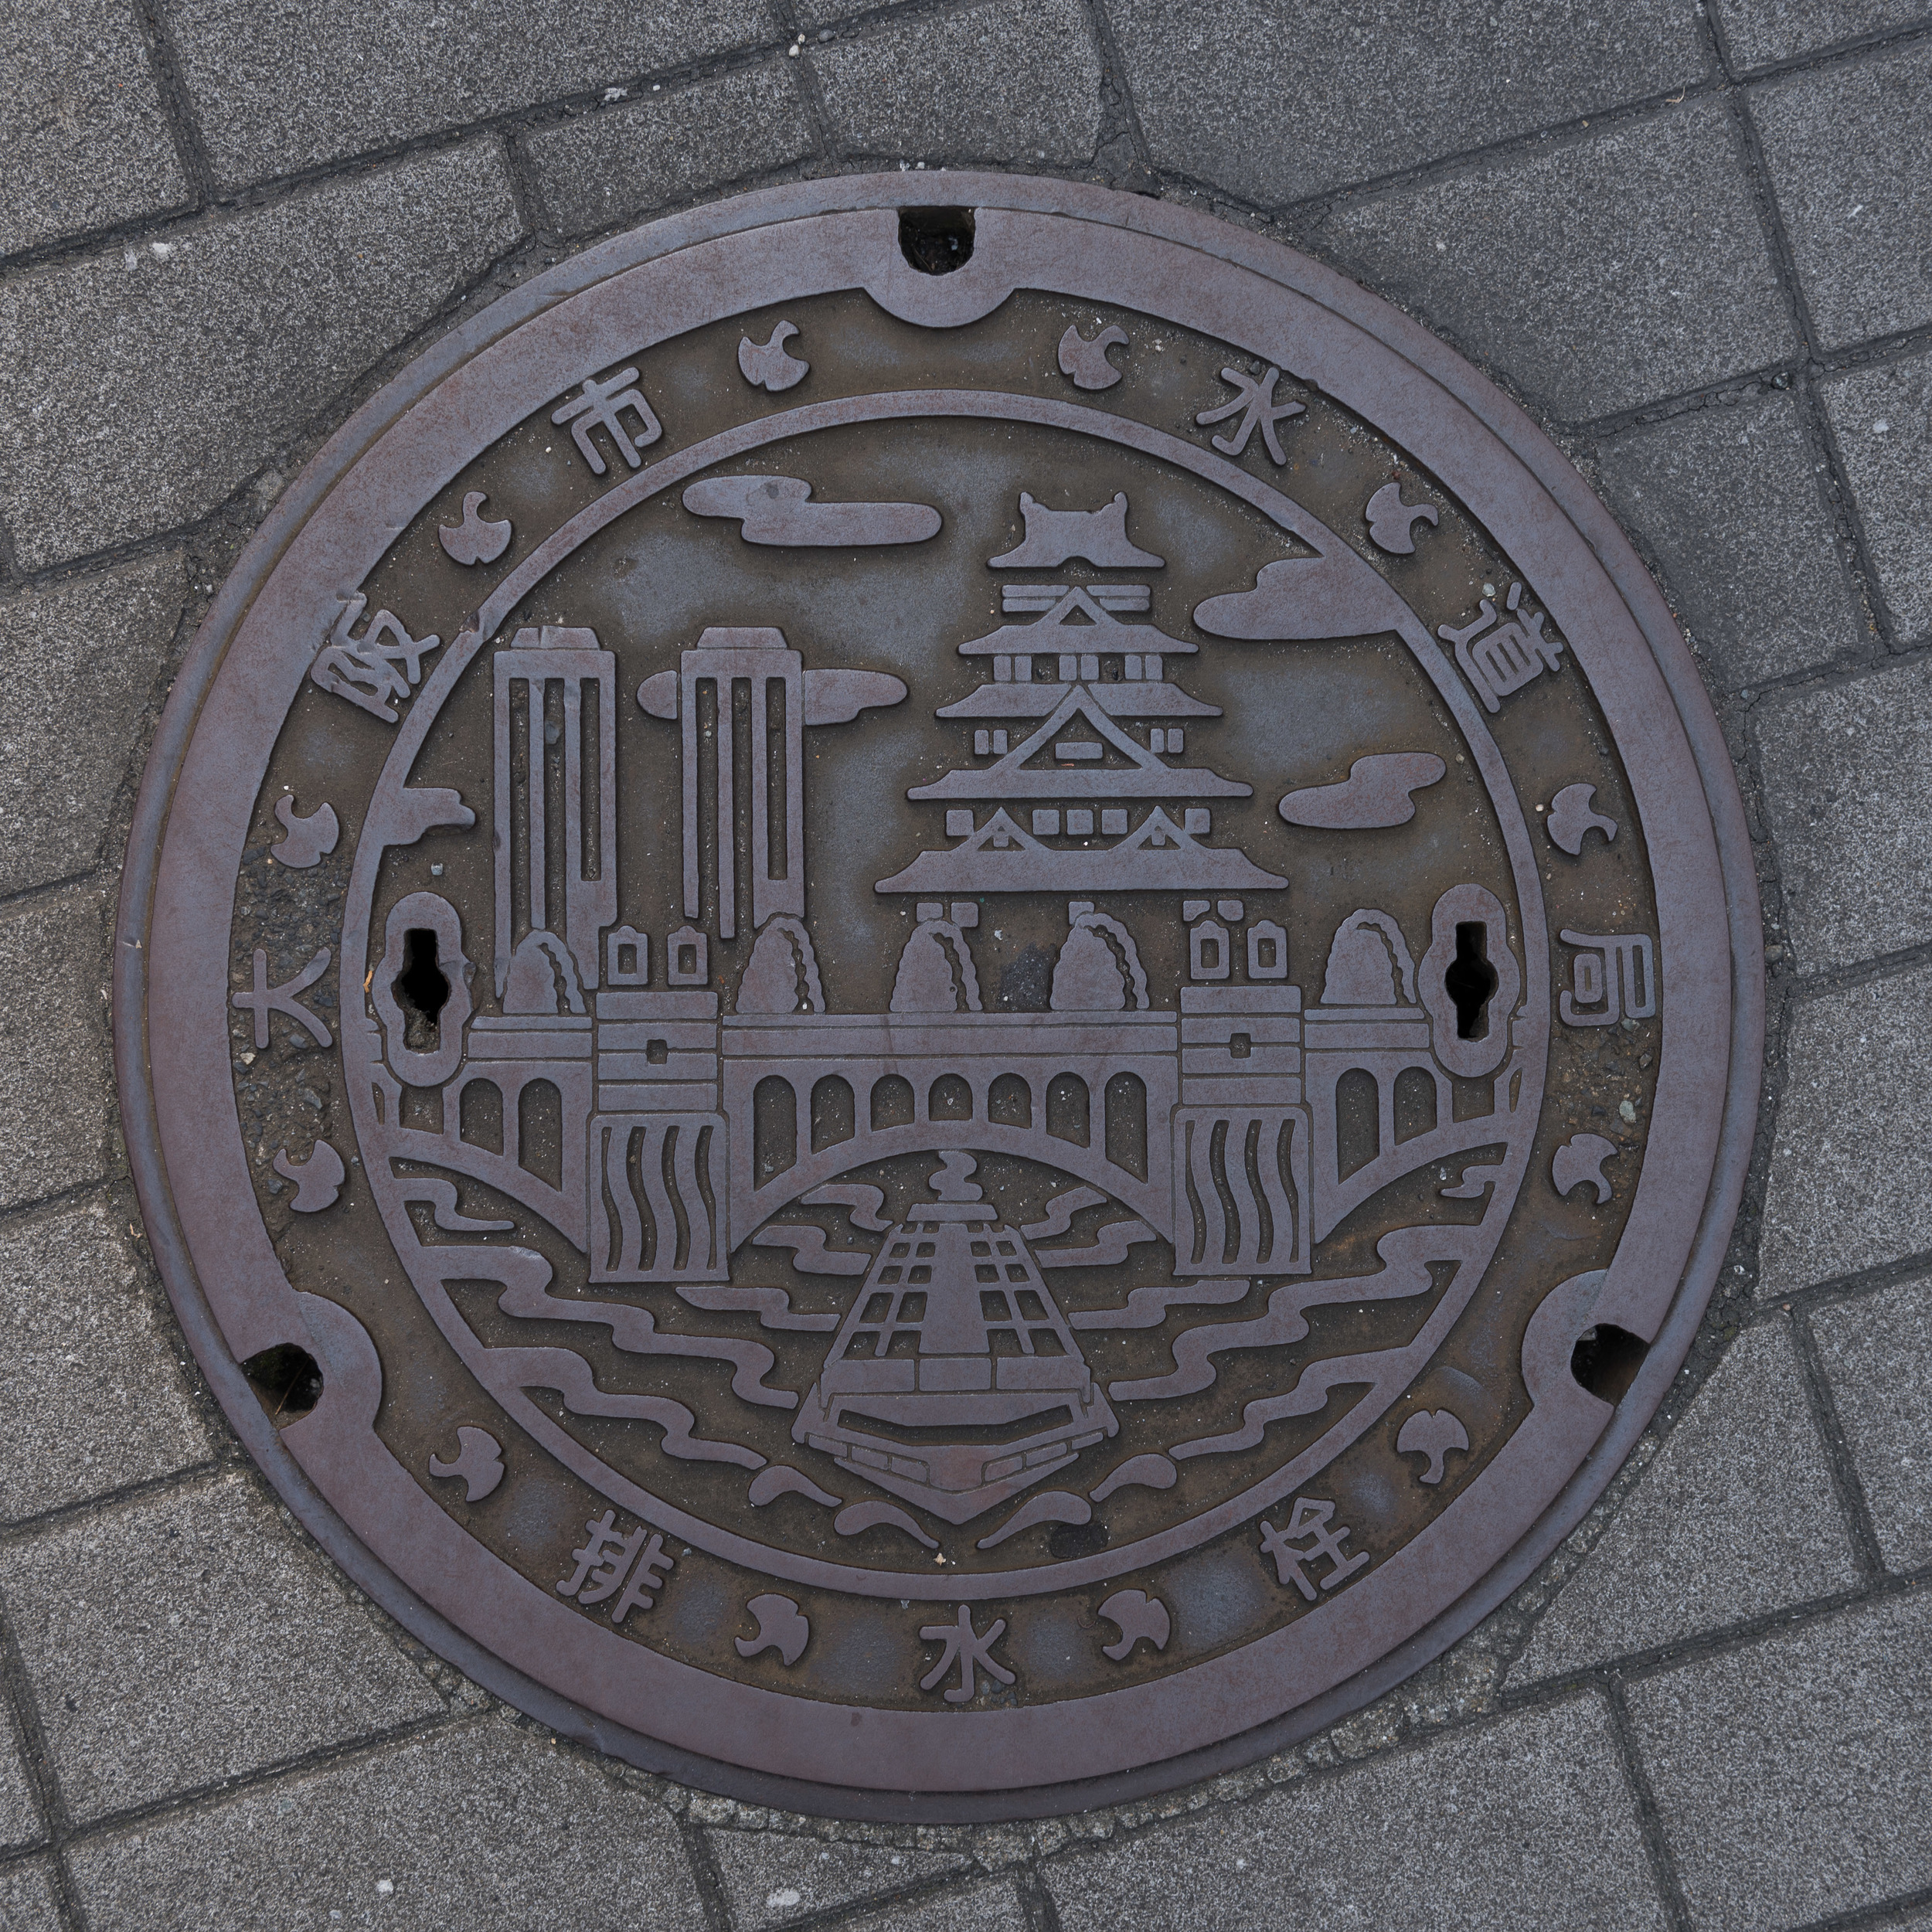 Japan_Manhole-16.jpg